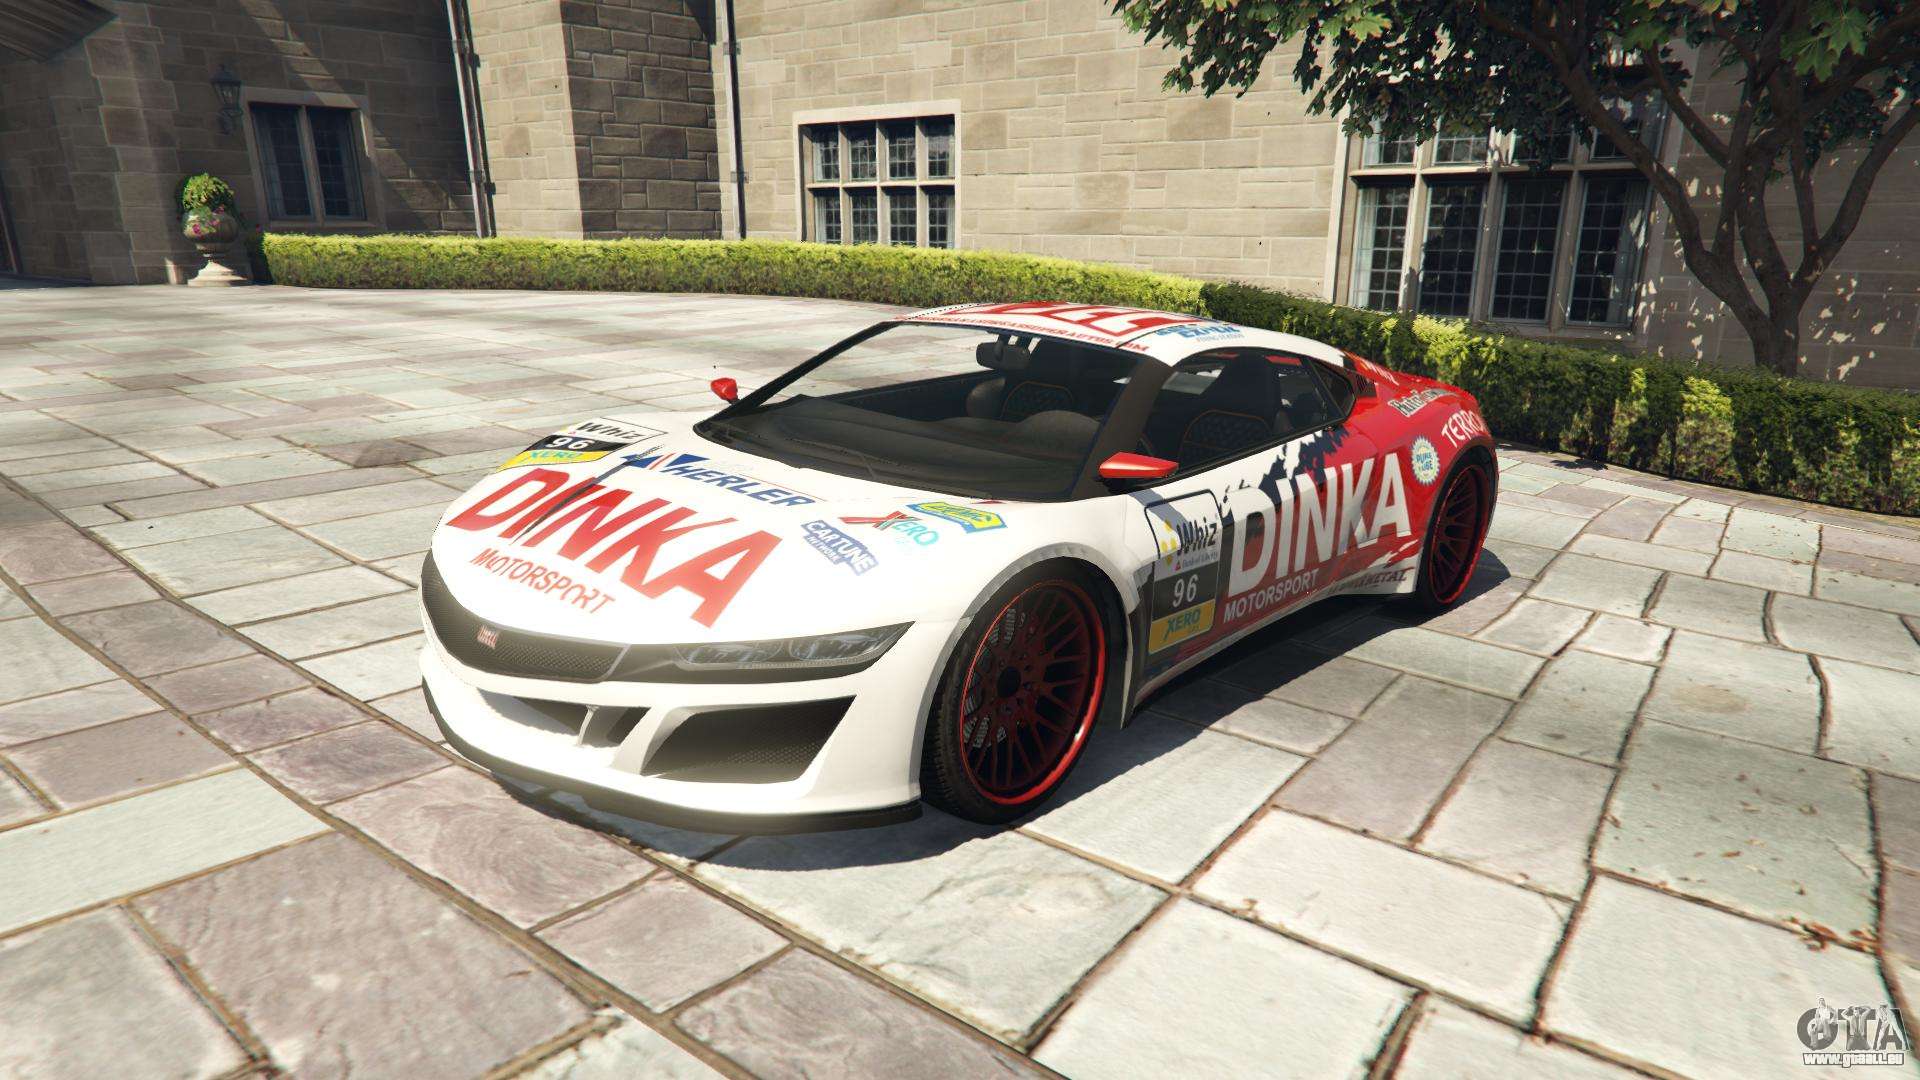 Dinka Jester Racecar de GTA 5 - vue de face